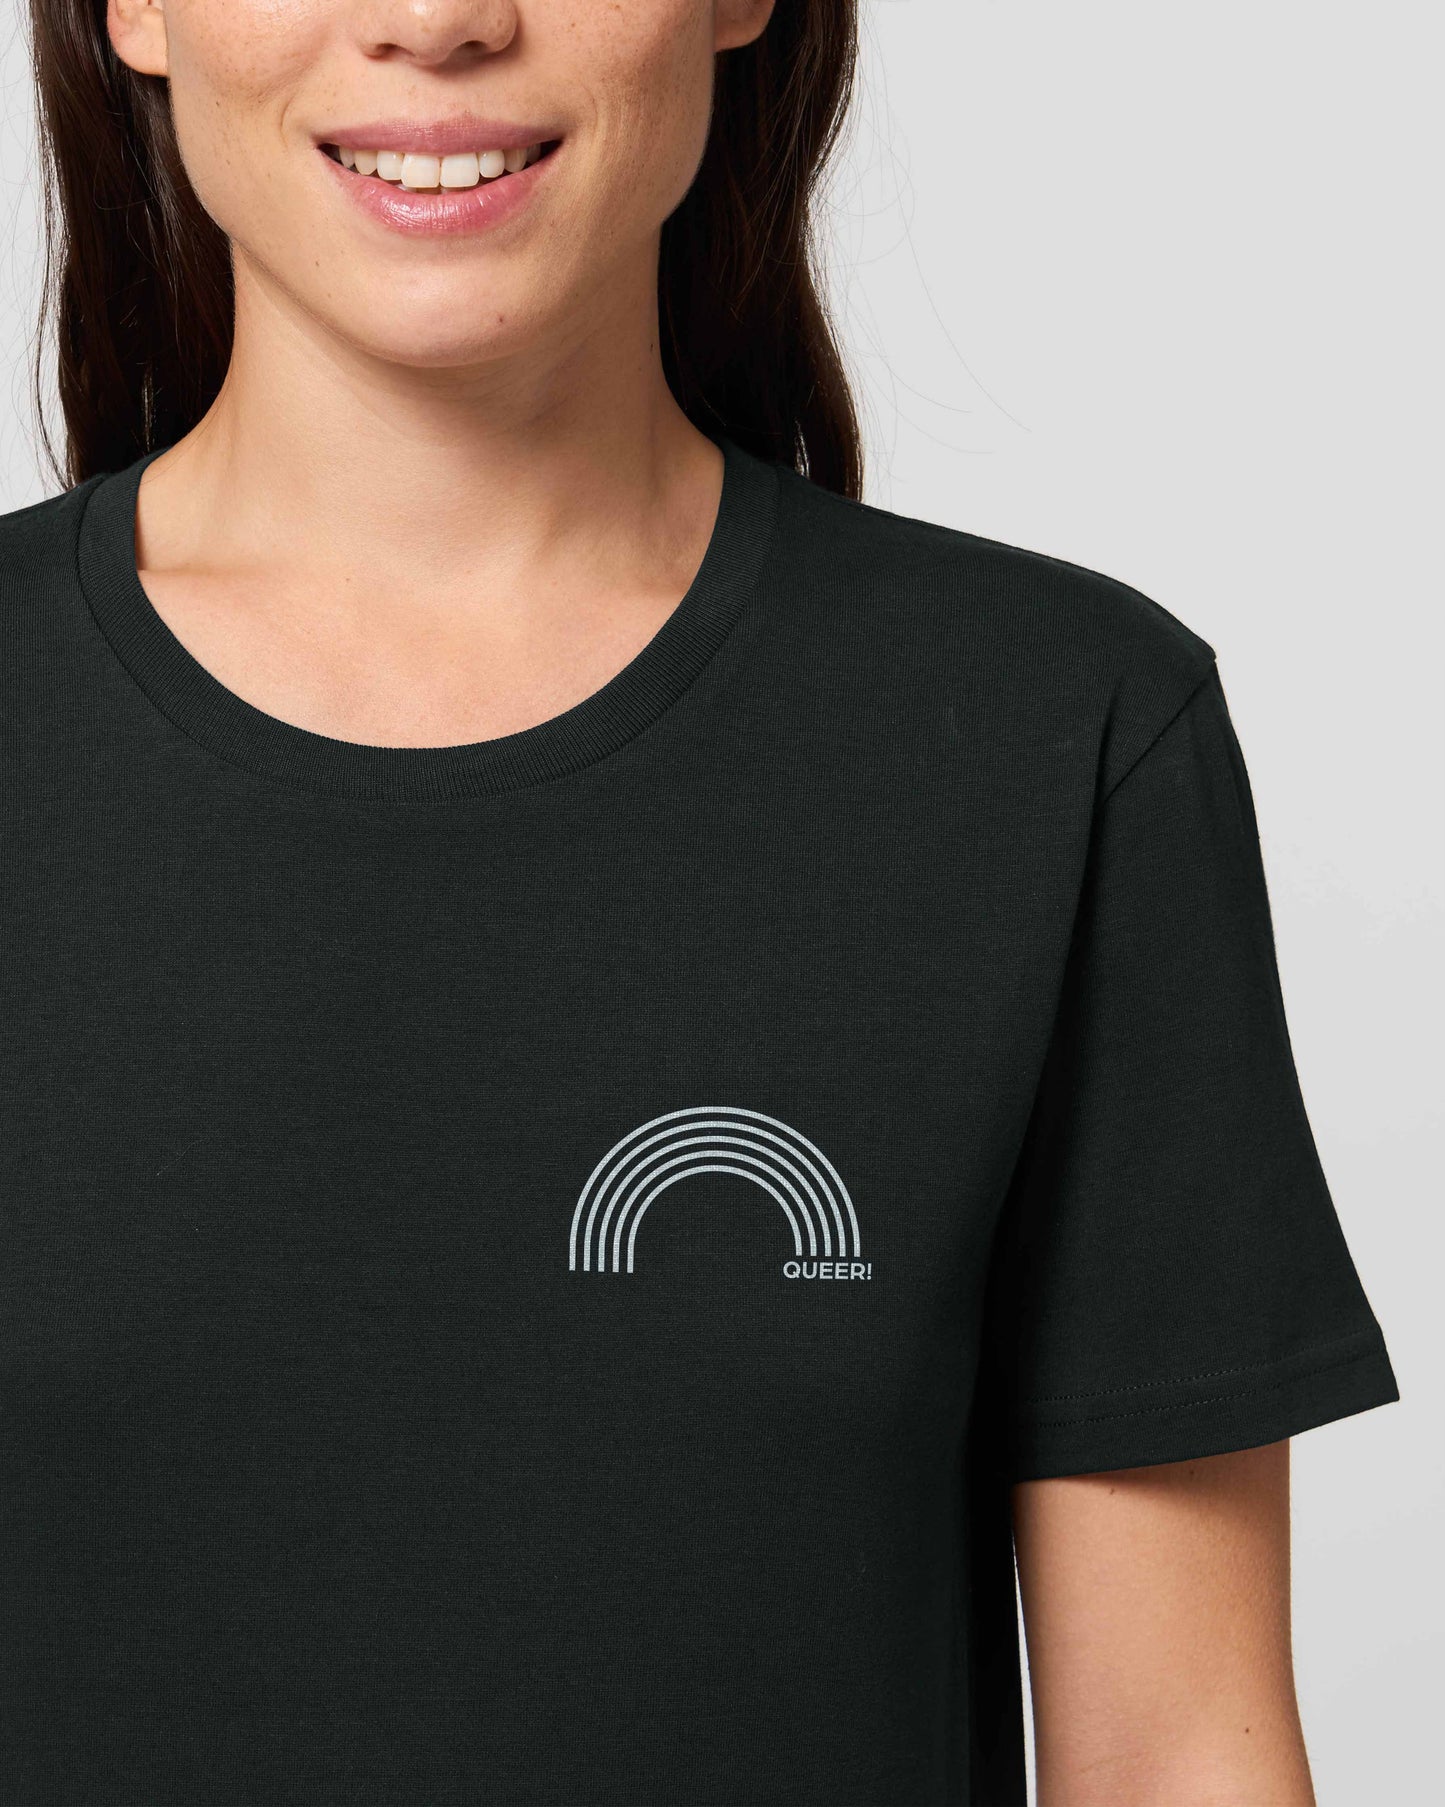 EINHORST® unisex Organic Shirt in Schwarz mit dem Motiv "queer Regenbogen" in der Kombination weißer Regenbogen mit weißer Schrift, Bild von weiblicher Person mit Shirt